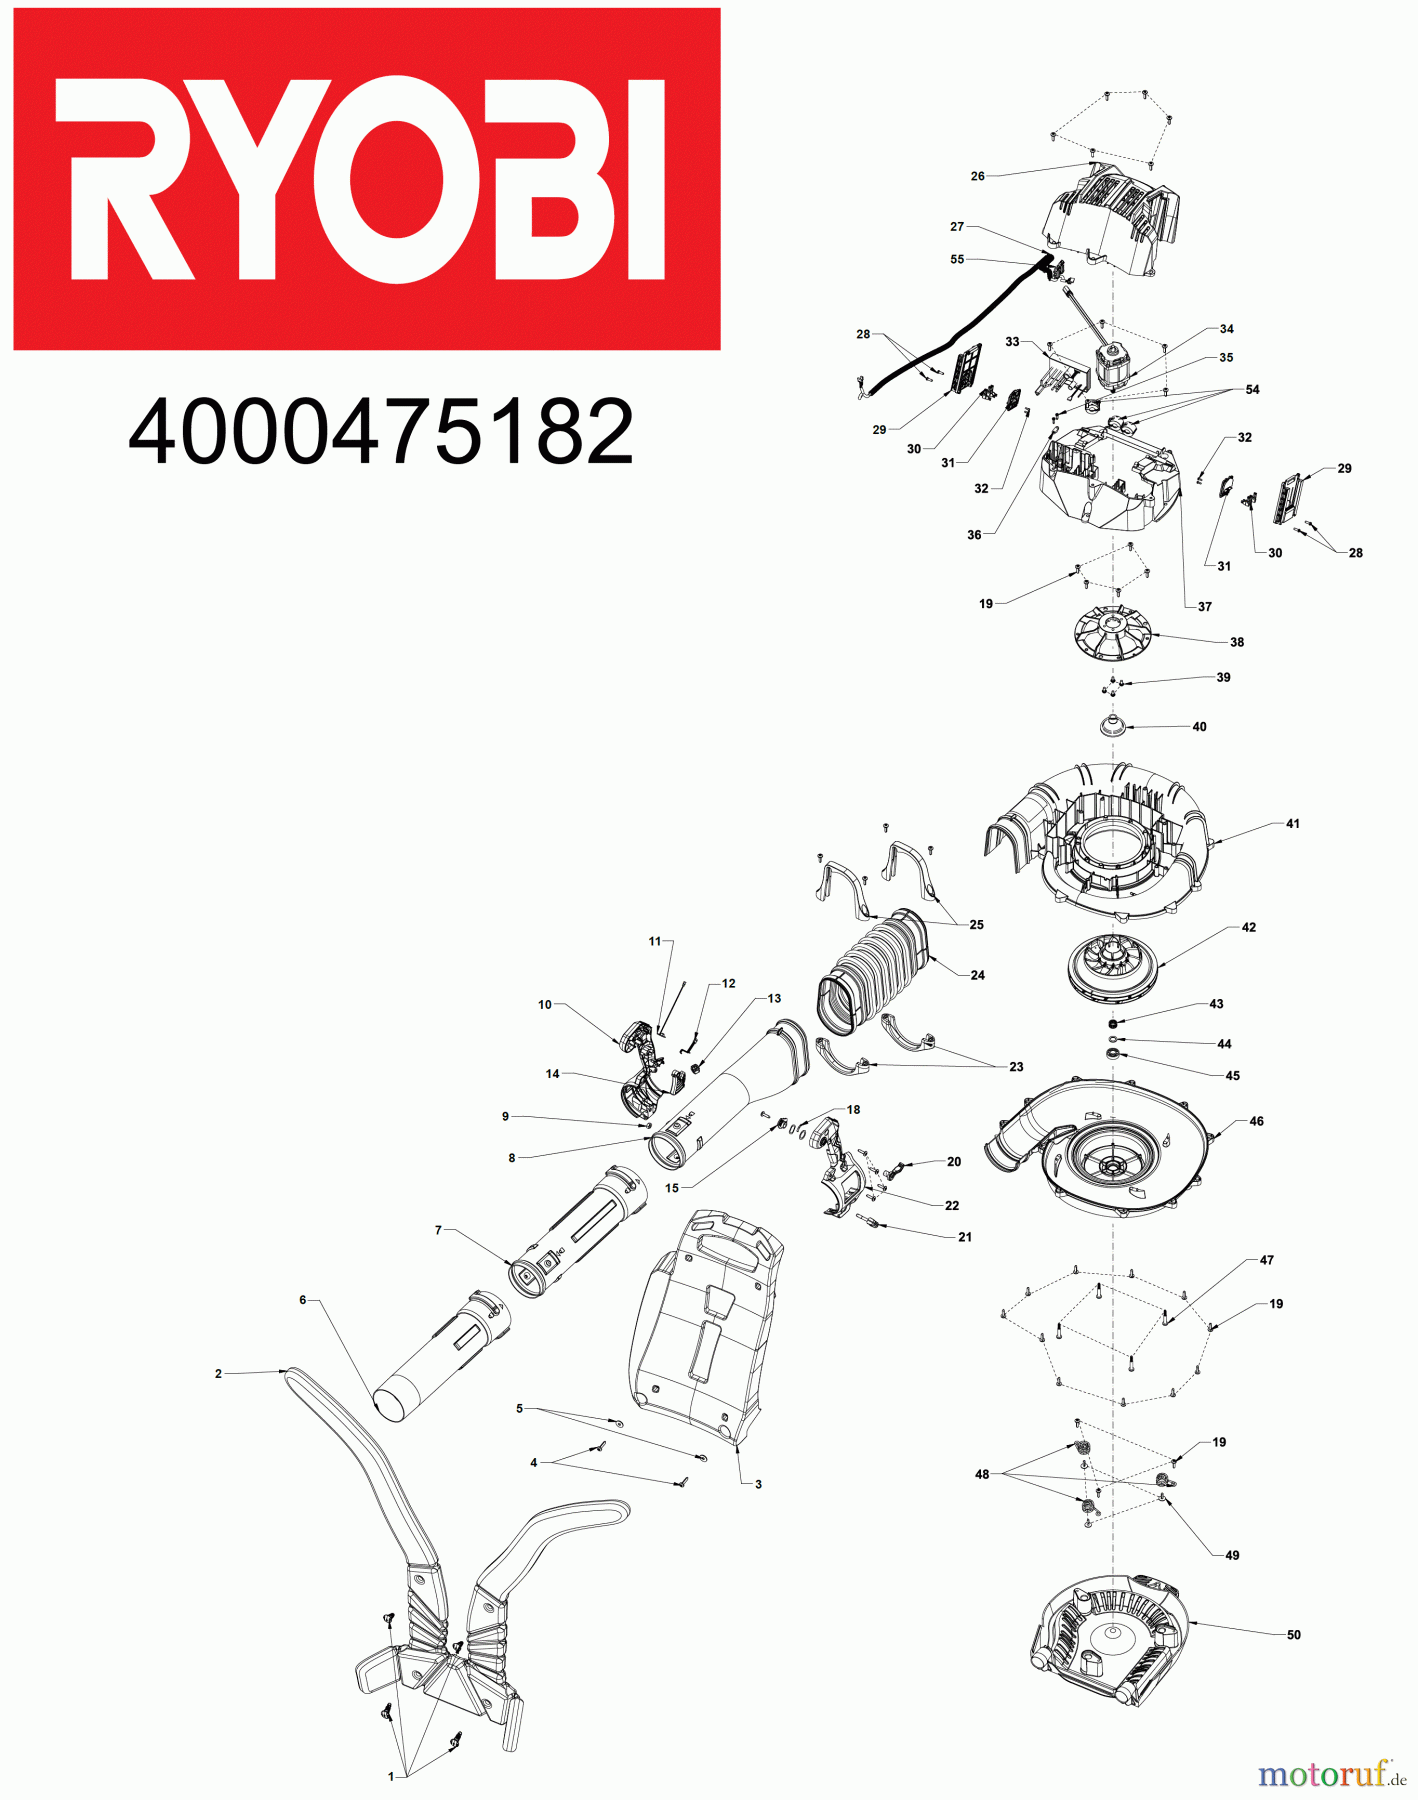  Ryobi Laubsauger und Laubbläser Blasgeräte RY36BPXA 36 V MAX POWER Brushless Akku-Laubgebläse, Luftgeschwindigkeit 232 km/h, rückentragbar Seite 1